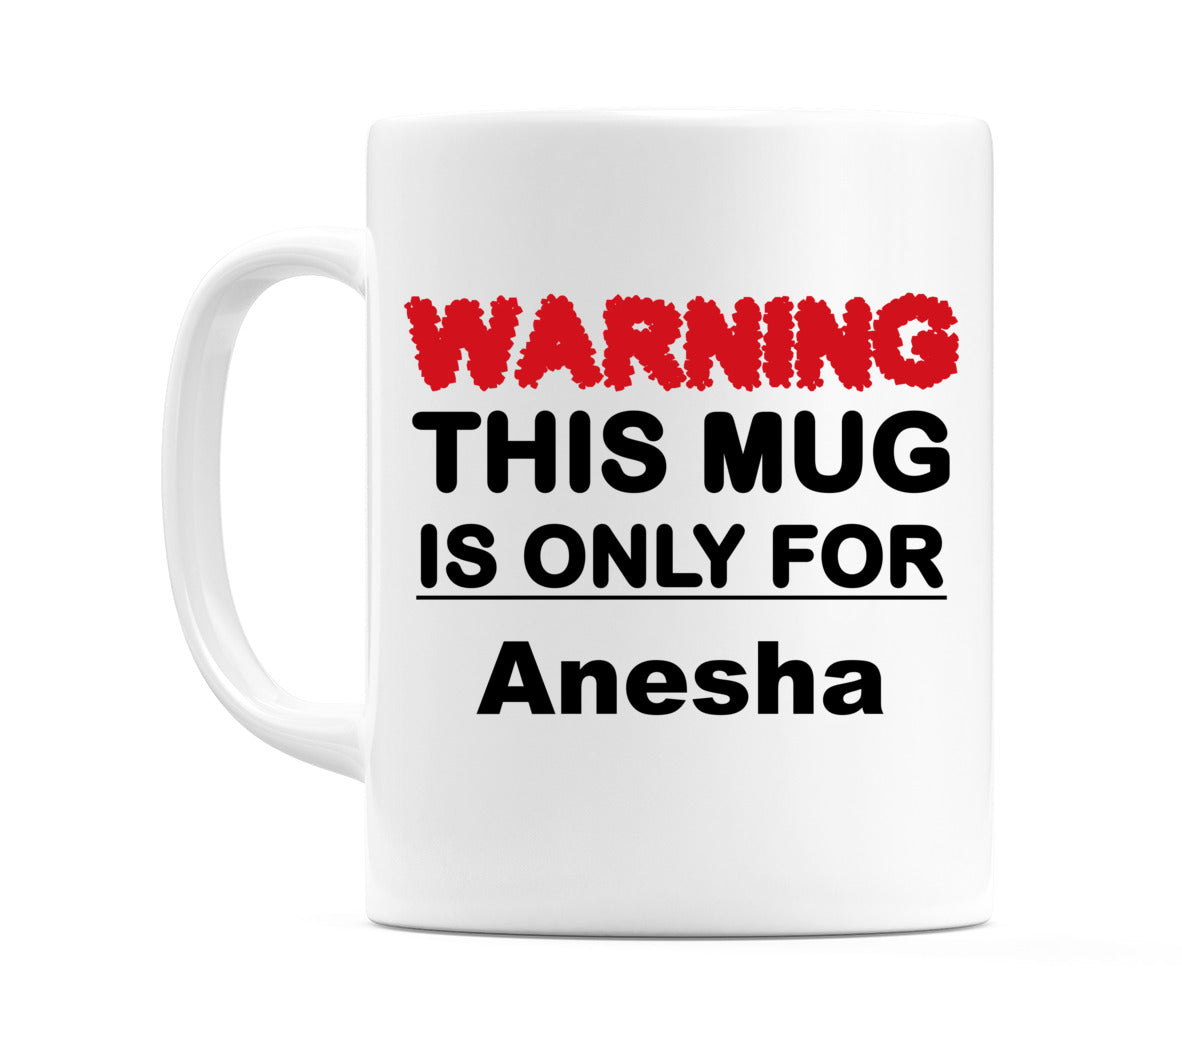 Warning This Mug is ONLY for Anesha Mug